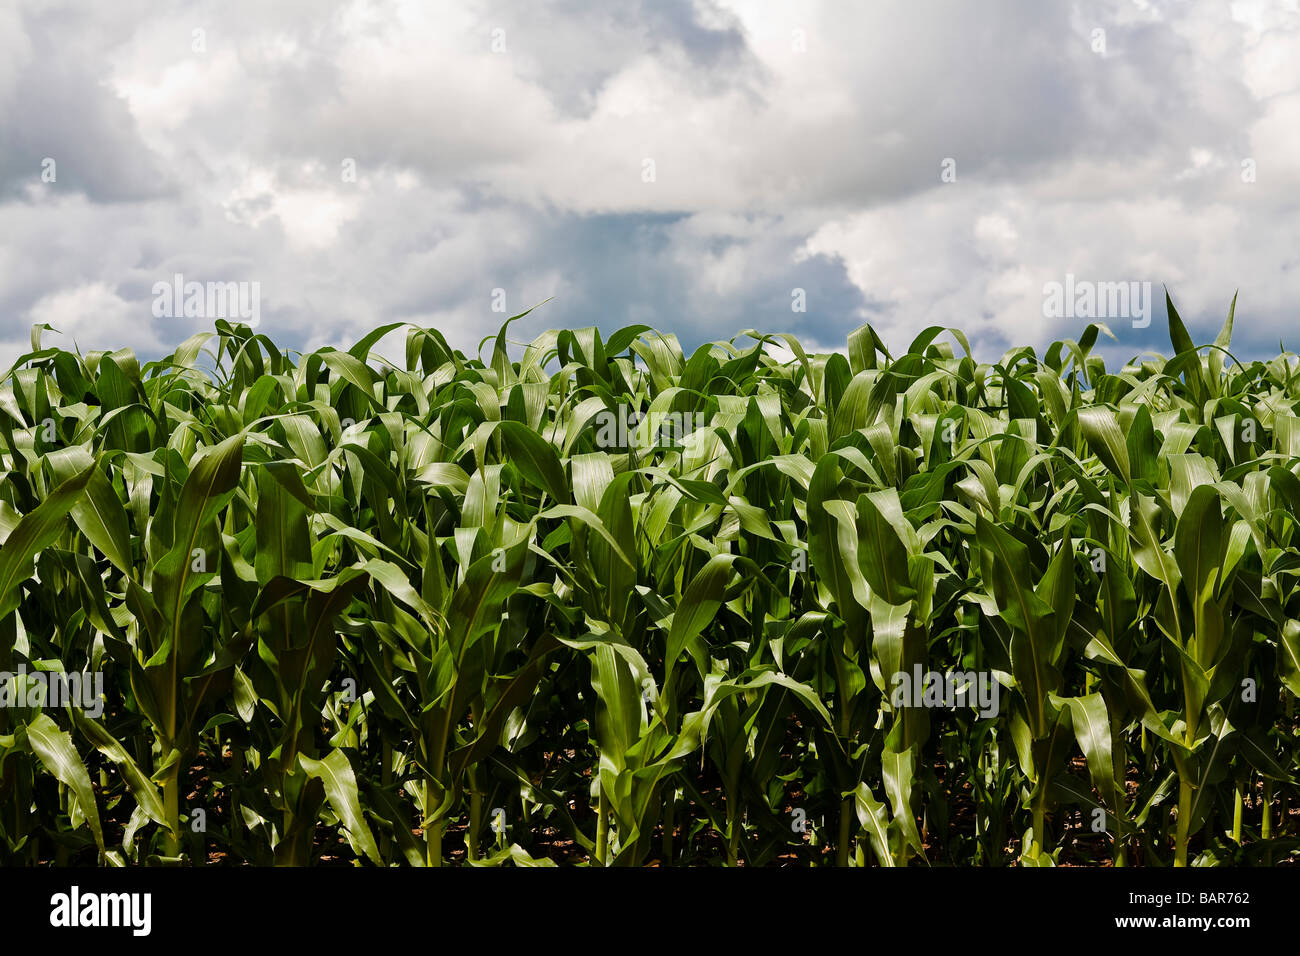 L'agriculture de plantation de maïs BR 163 route de l'État du Mato Grosso au Brésil Banque D'Images